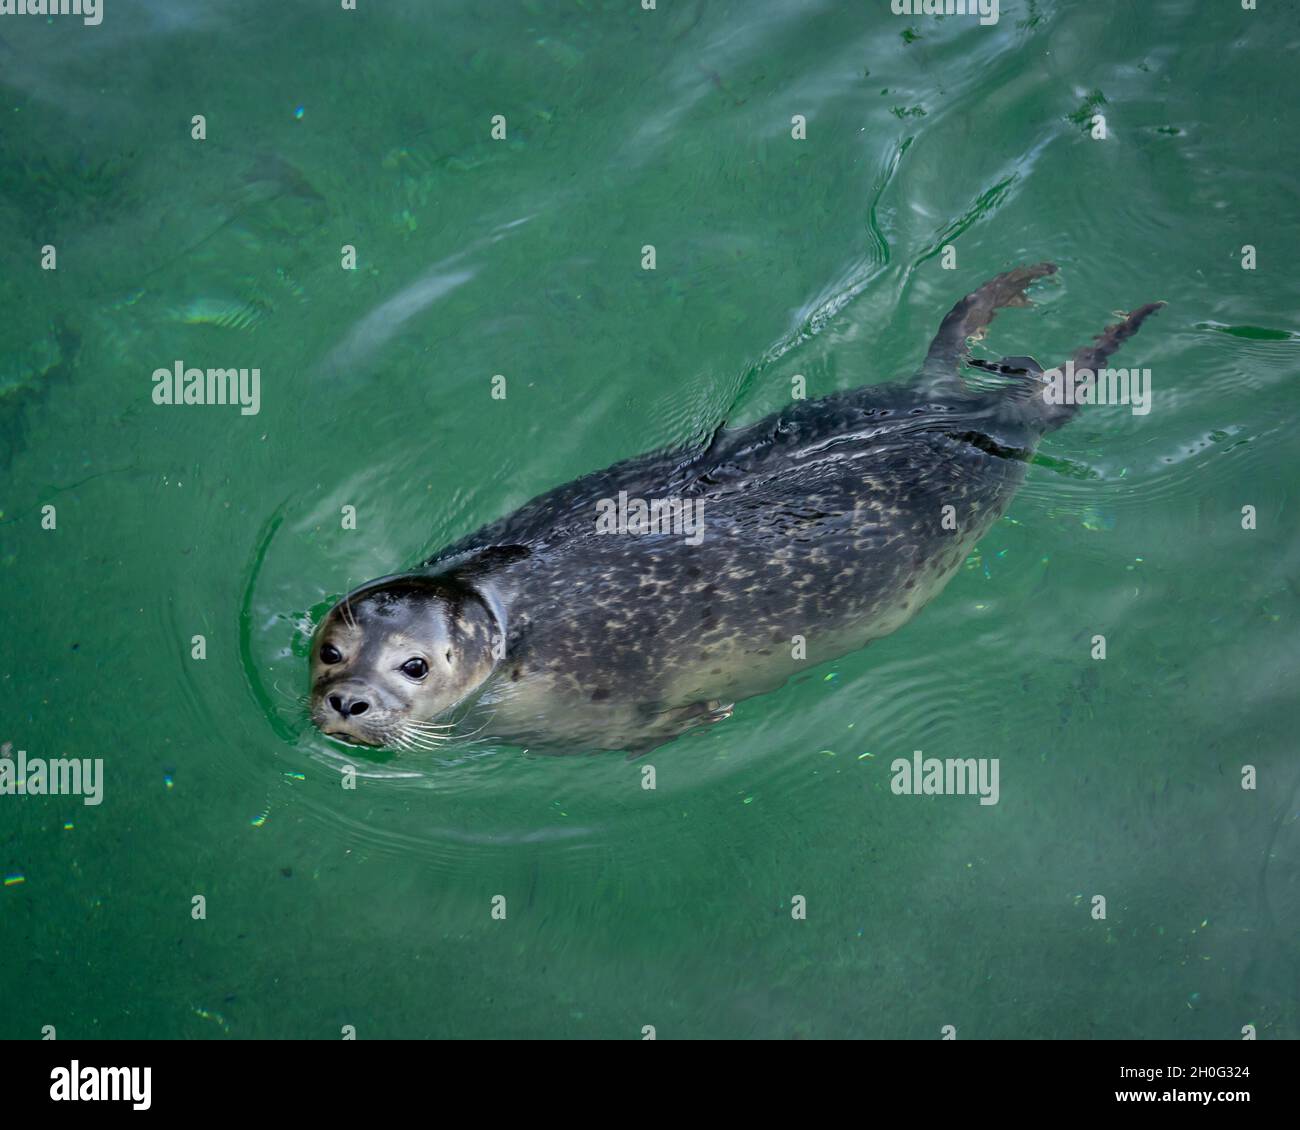 Jeune phoque gris nageant dans une eau verte. Banque D'Images